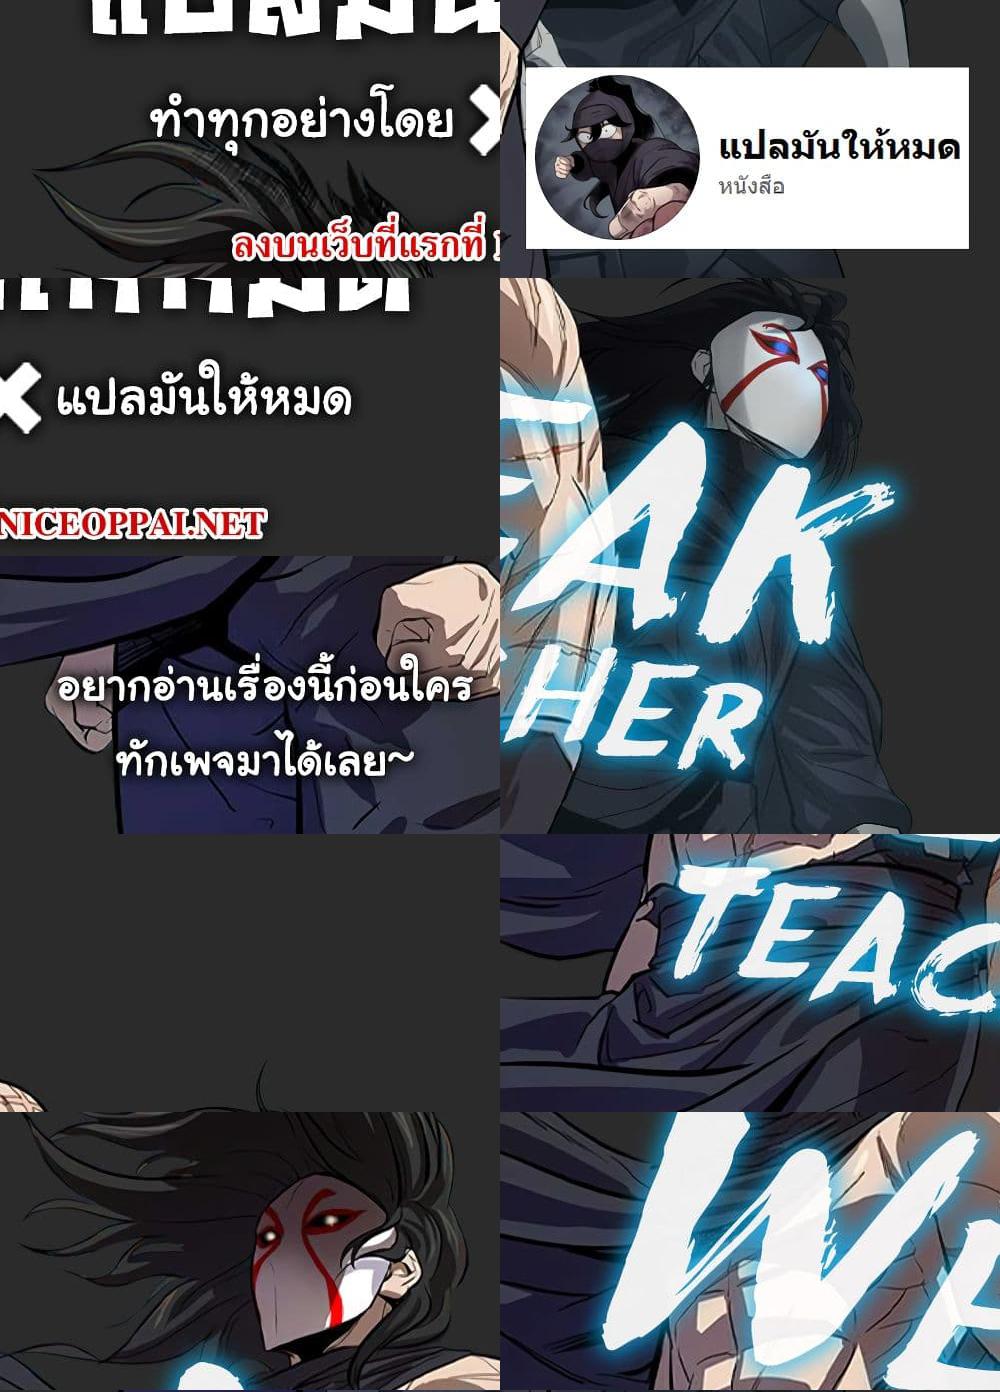 Weak Teacher - 11 - 1